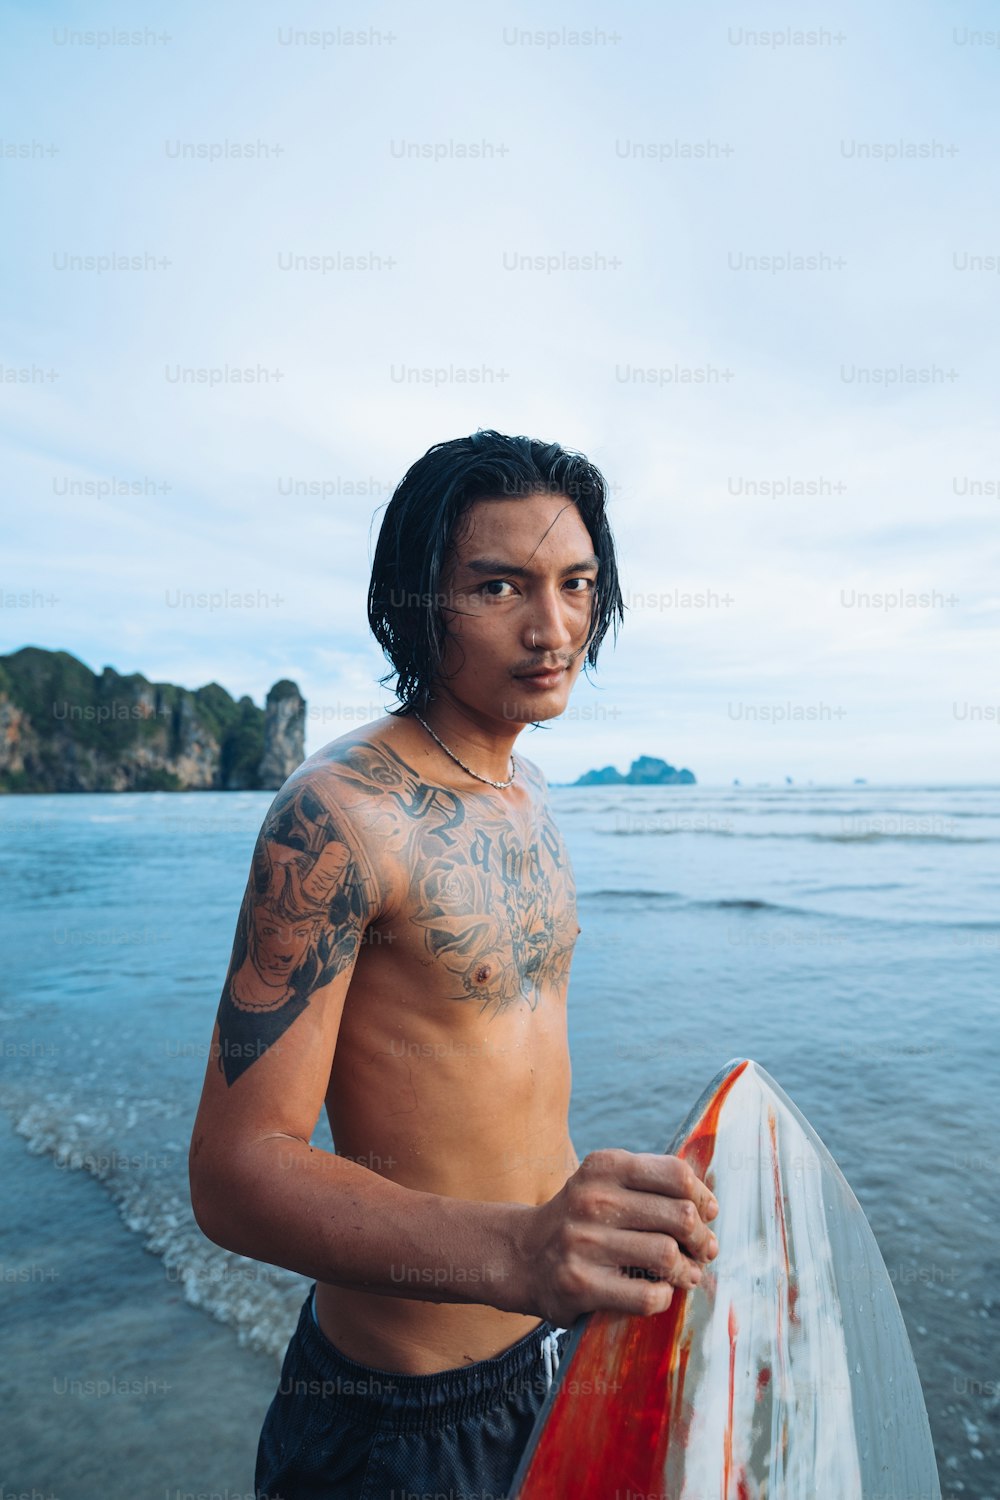 Un uomo a torso nudo che tiene una tavola da surf sulla spiaggia